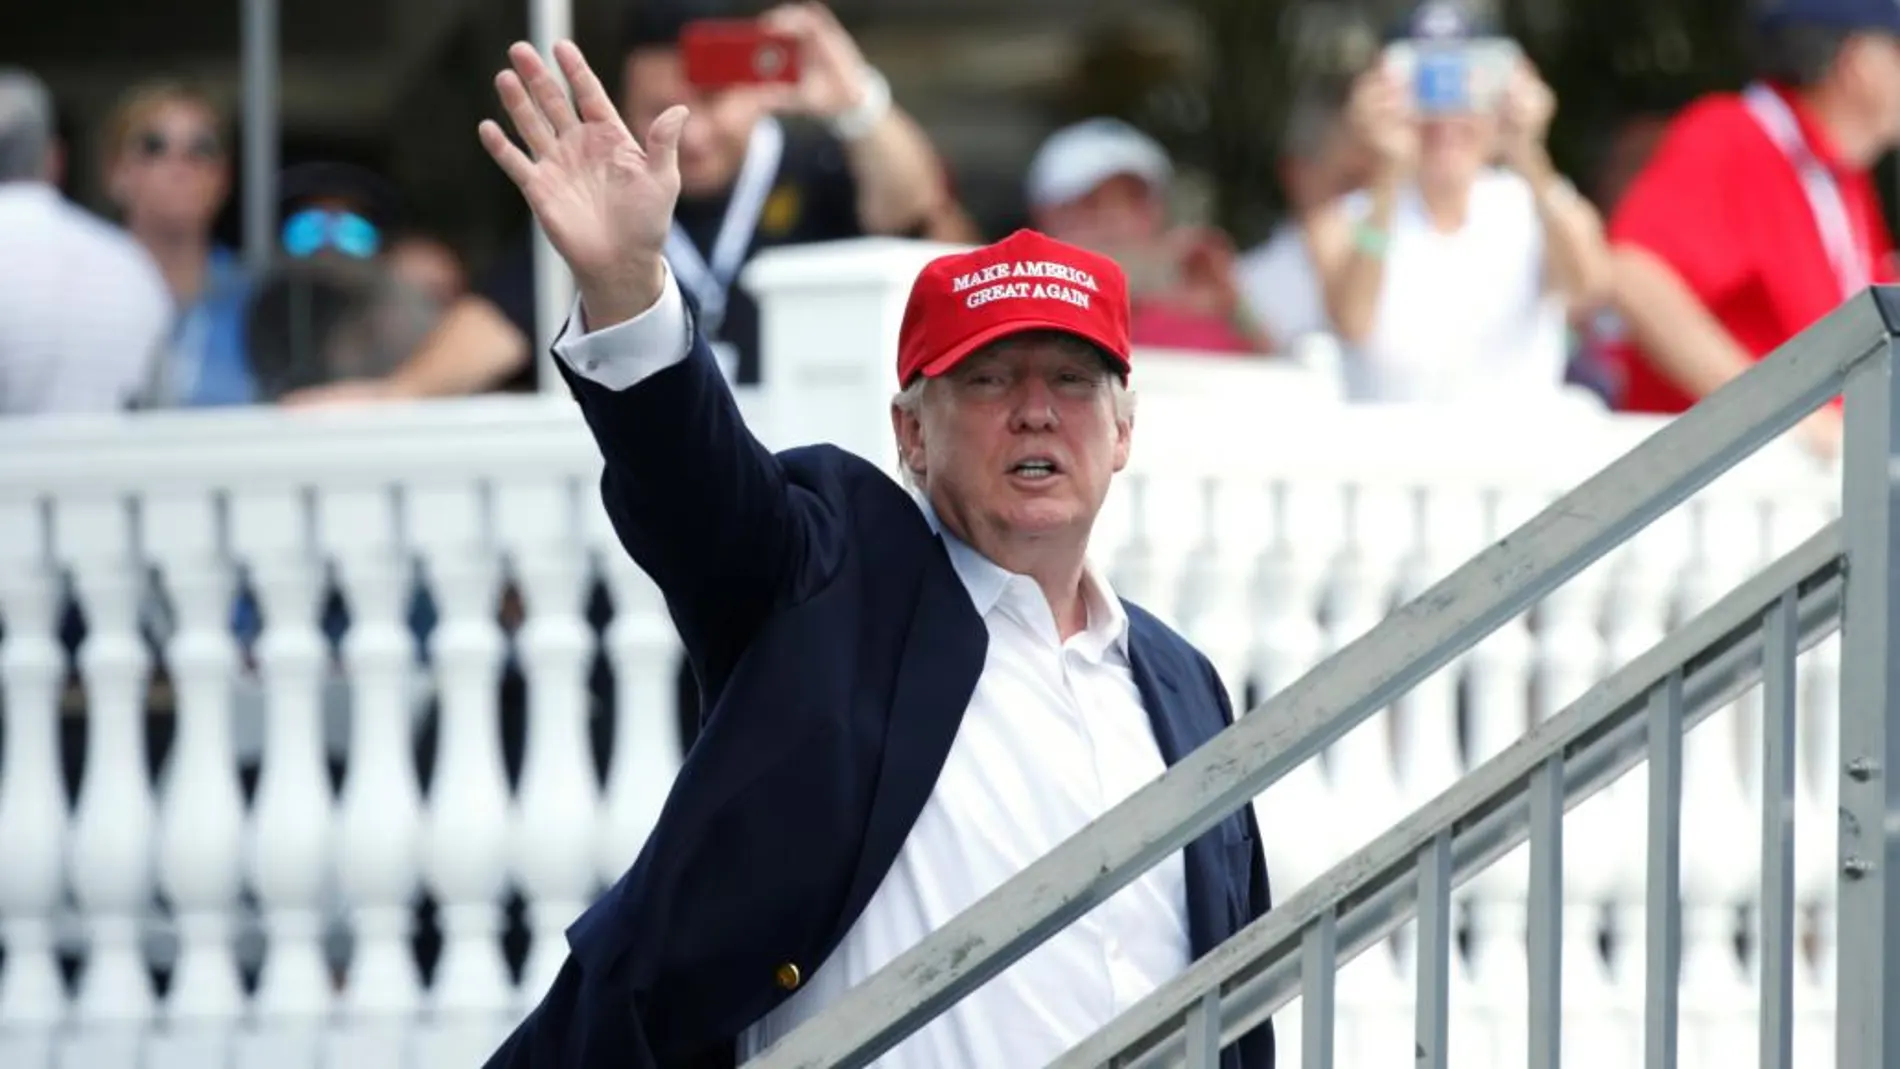 Donald Trumpo asistió ayer a un torneo de golf femenino en Bedminster